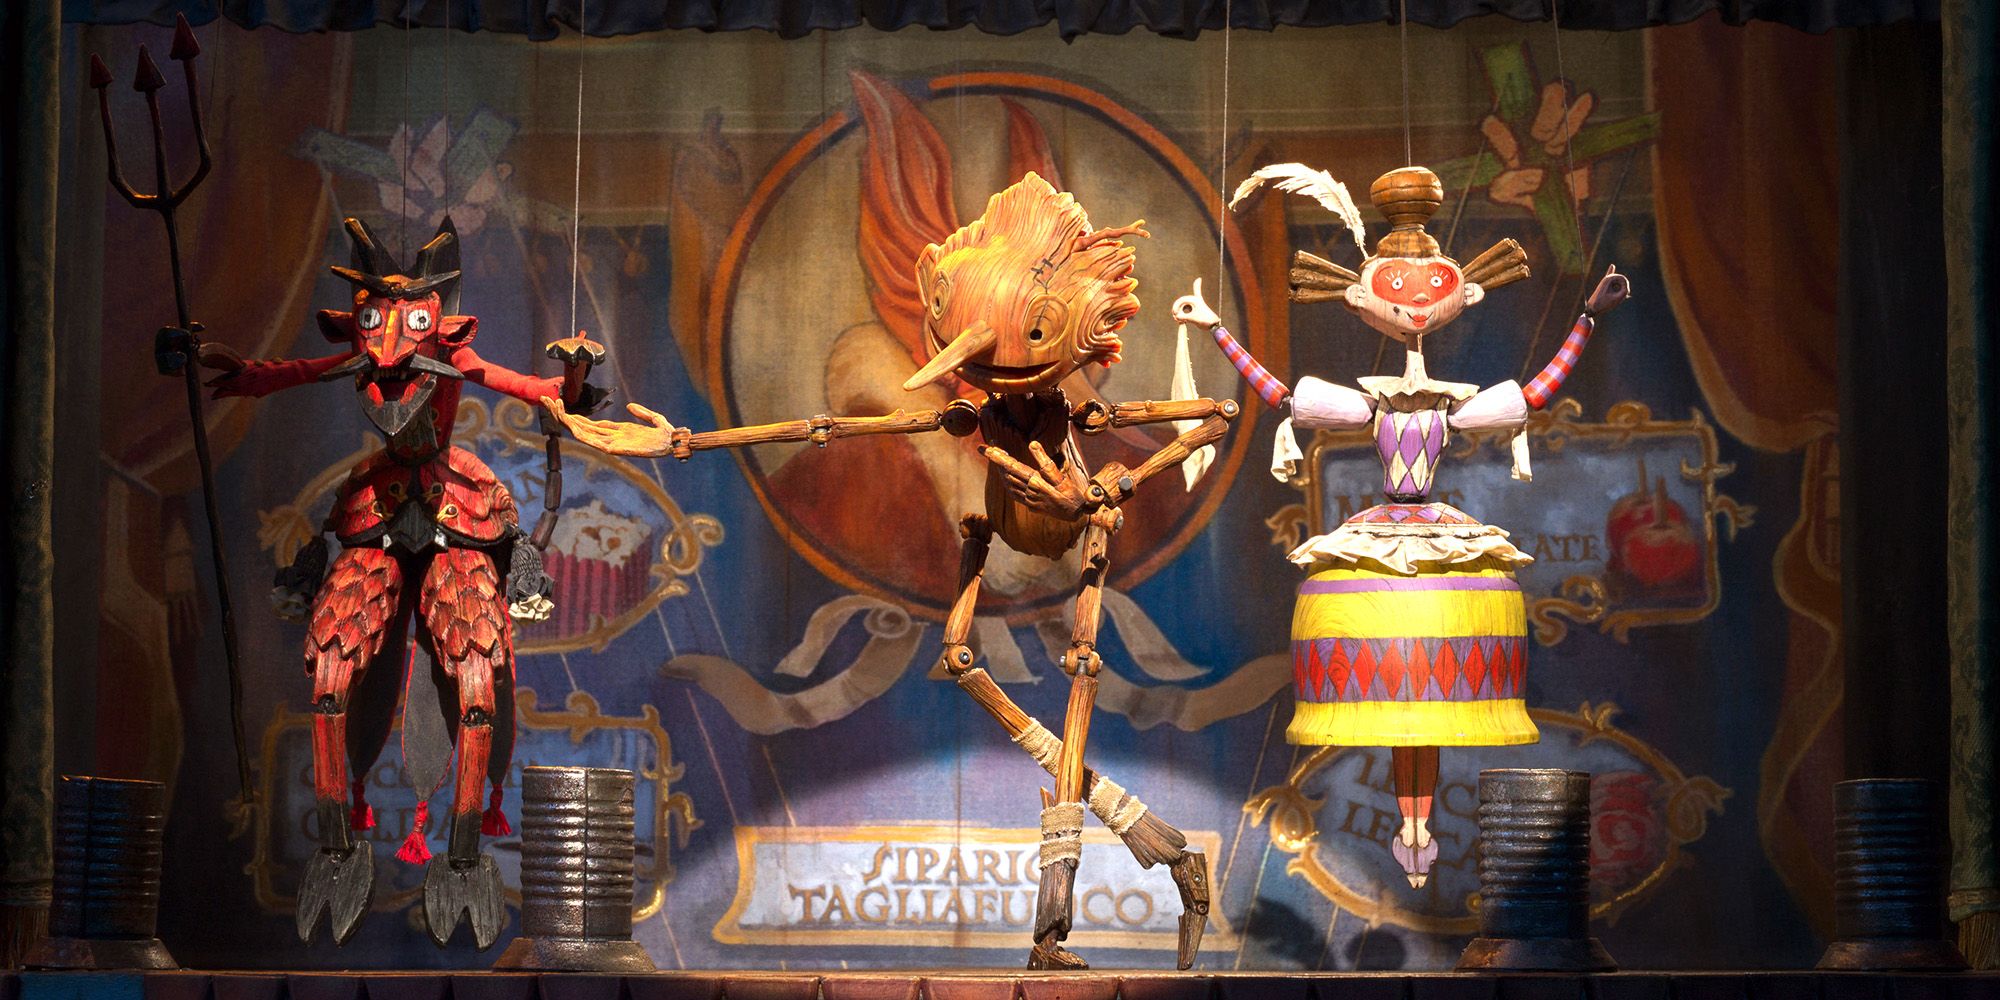 Guillermo del Toro Pinocchio dances on stage